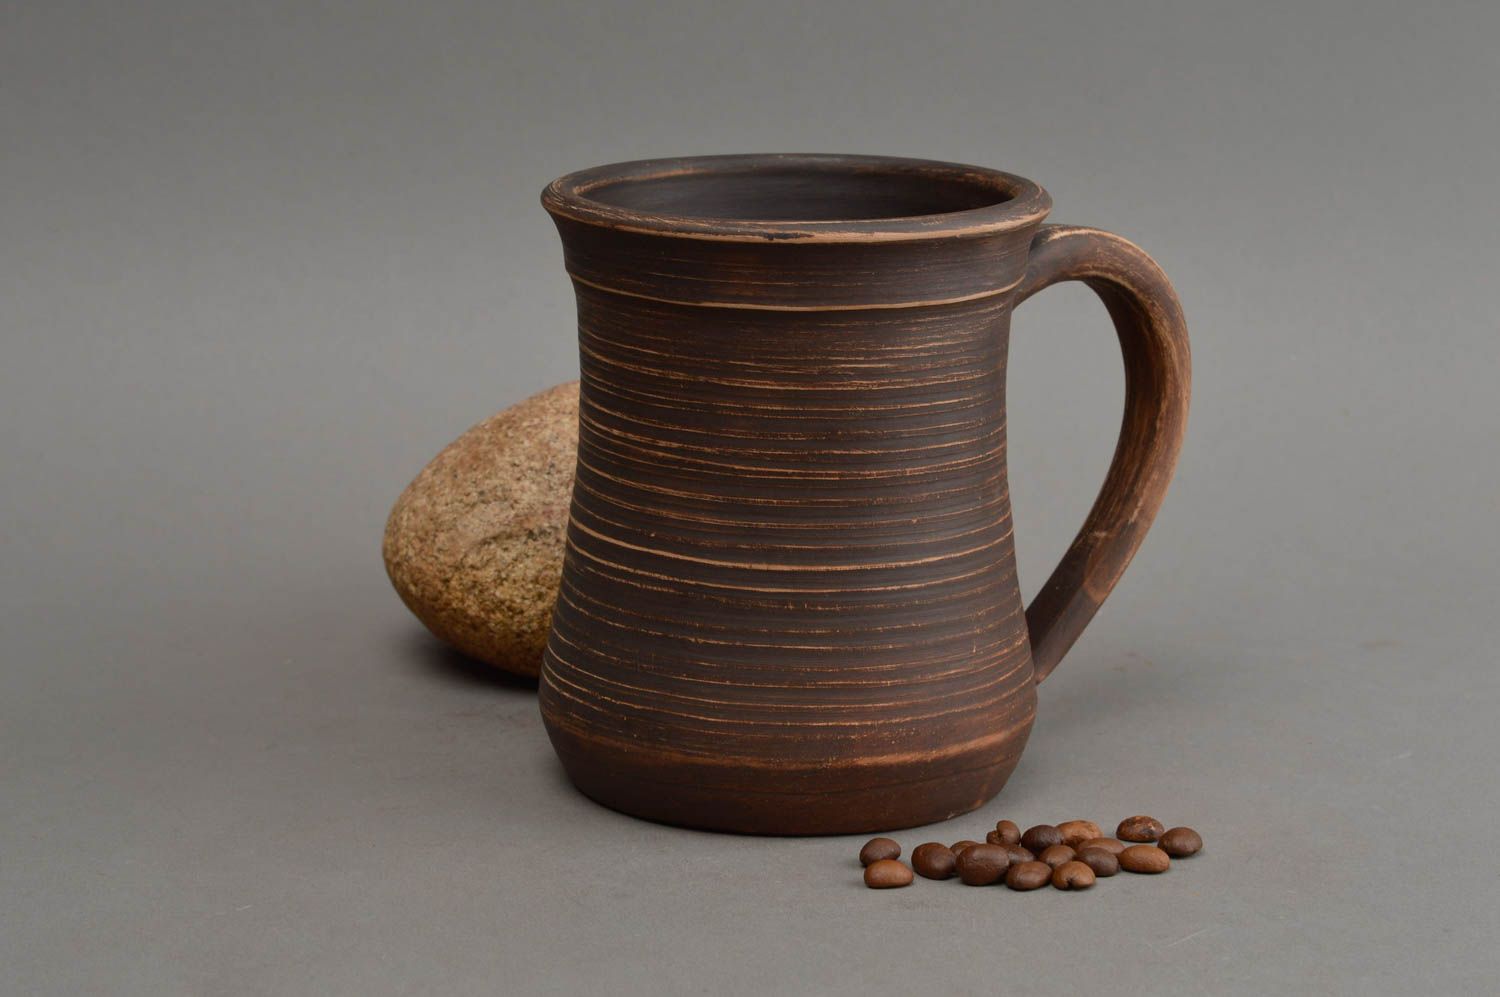 Тёмная чашка ручной работы из глины в гончарной технике для напитков 600 мл фото 1